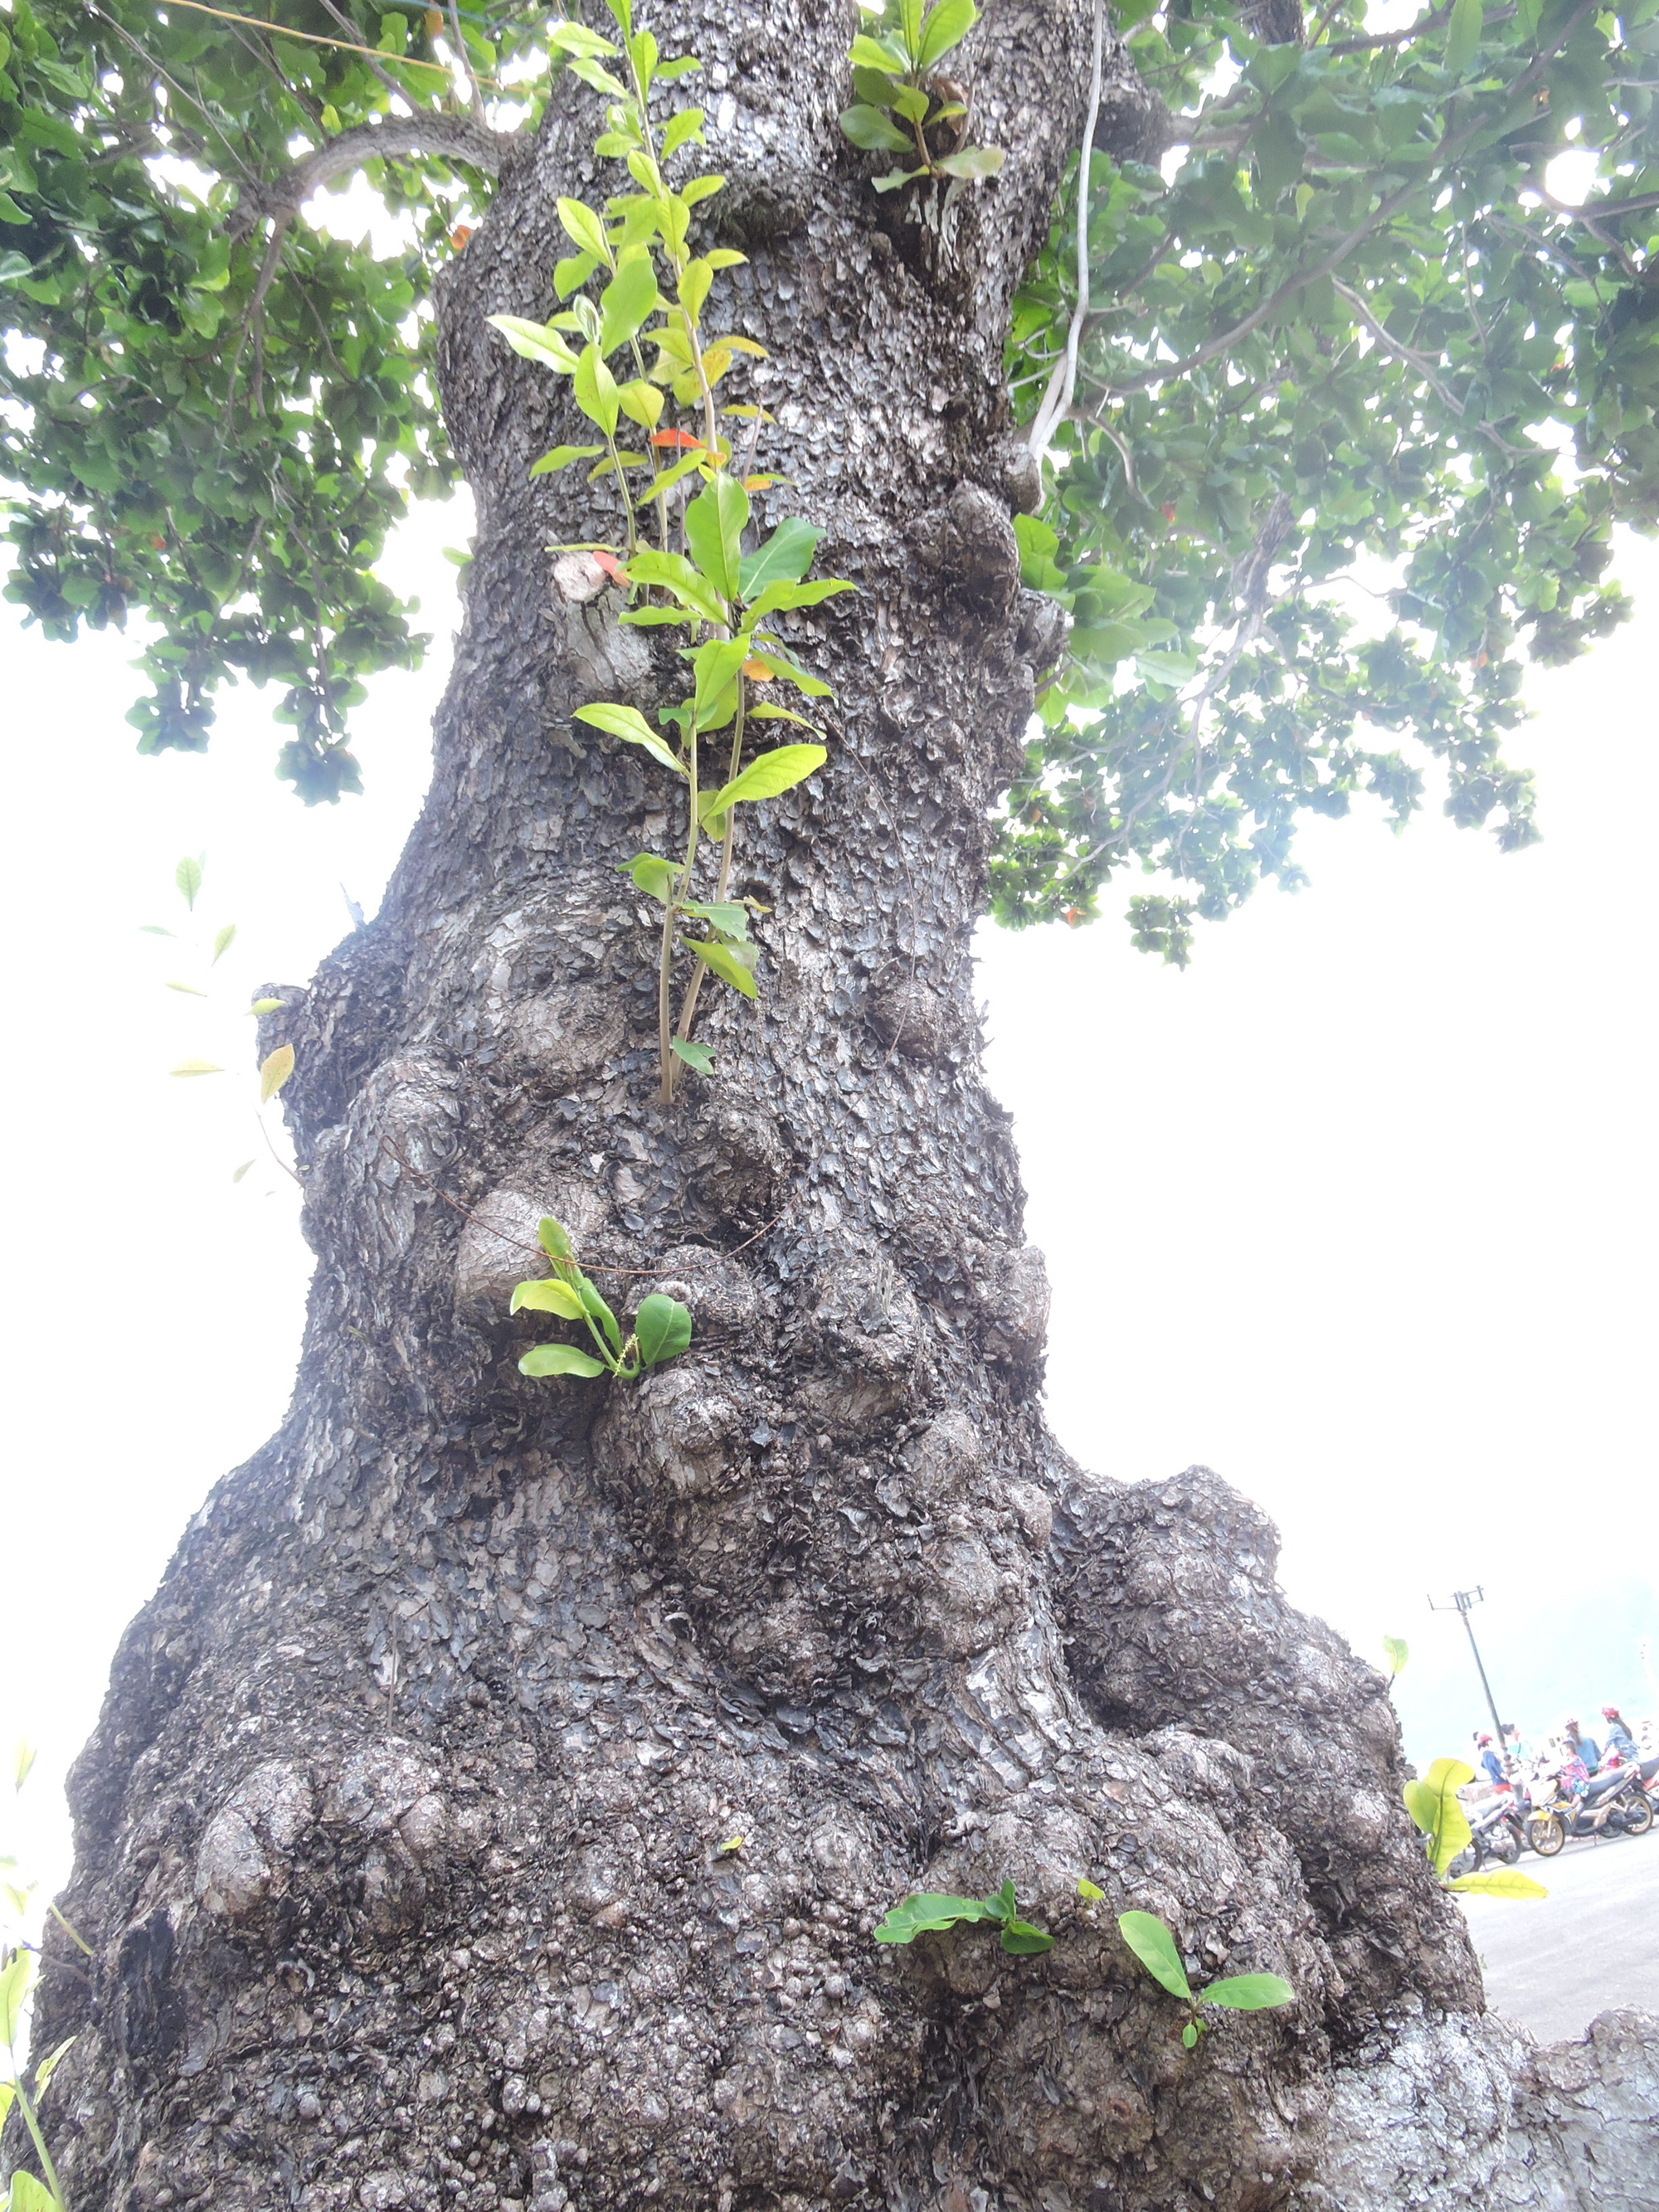 (Bài xuân online) Ngắm vẻ đẹp vượt thời gian của hàng cây di sản ở Côn Đảo - Ảnh 4.